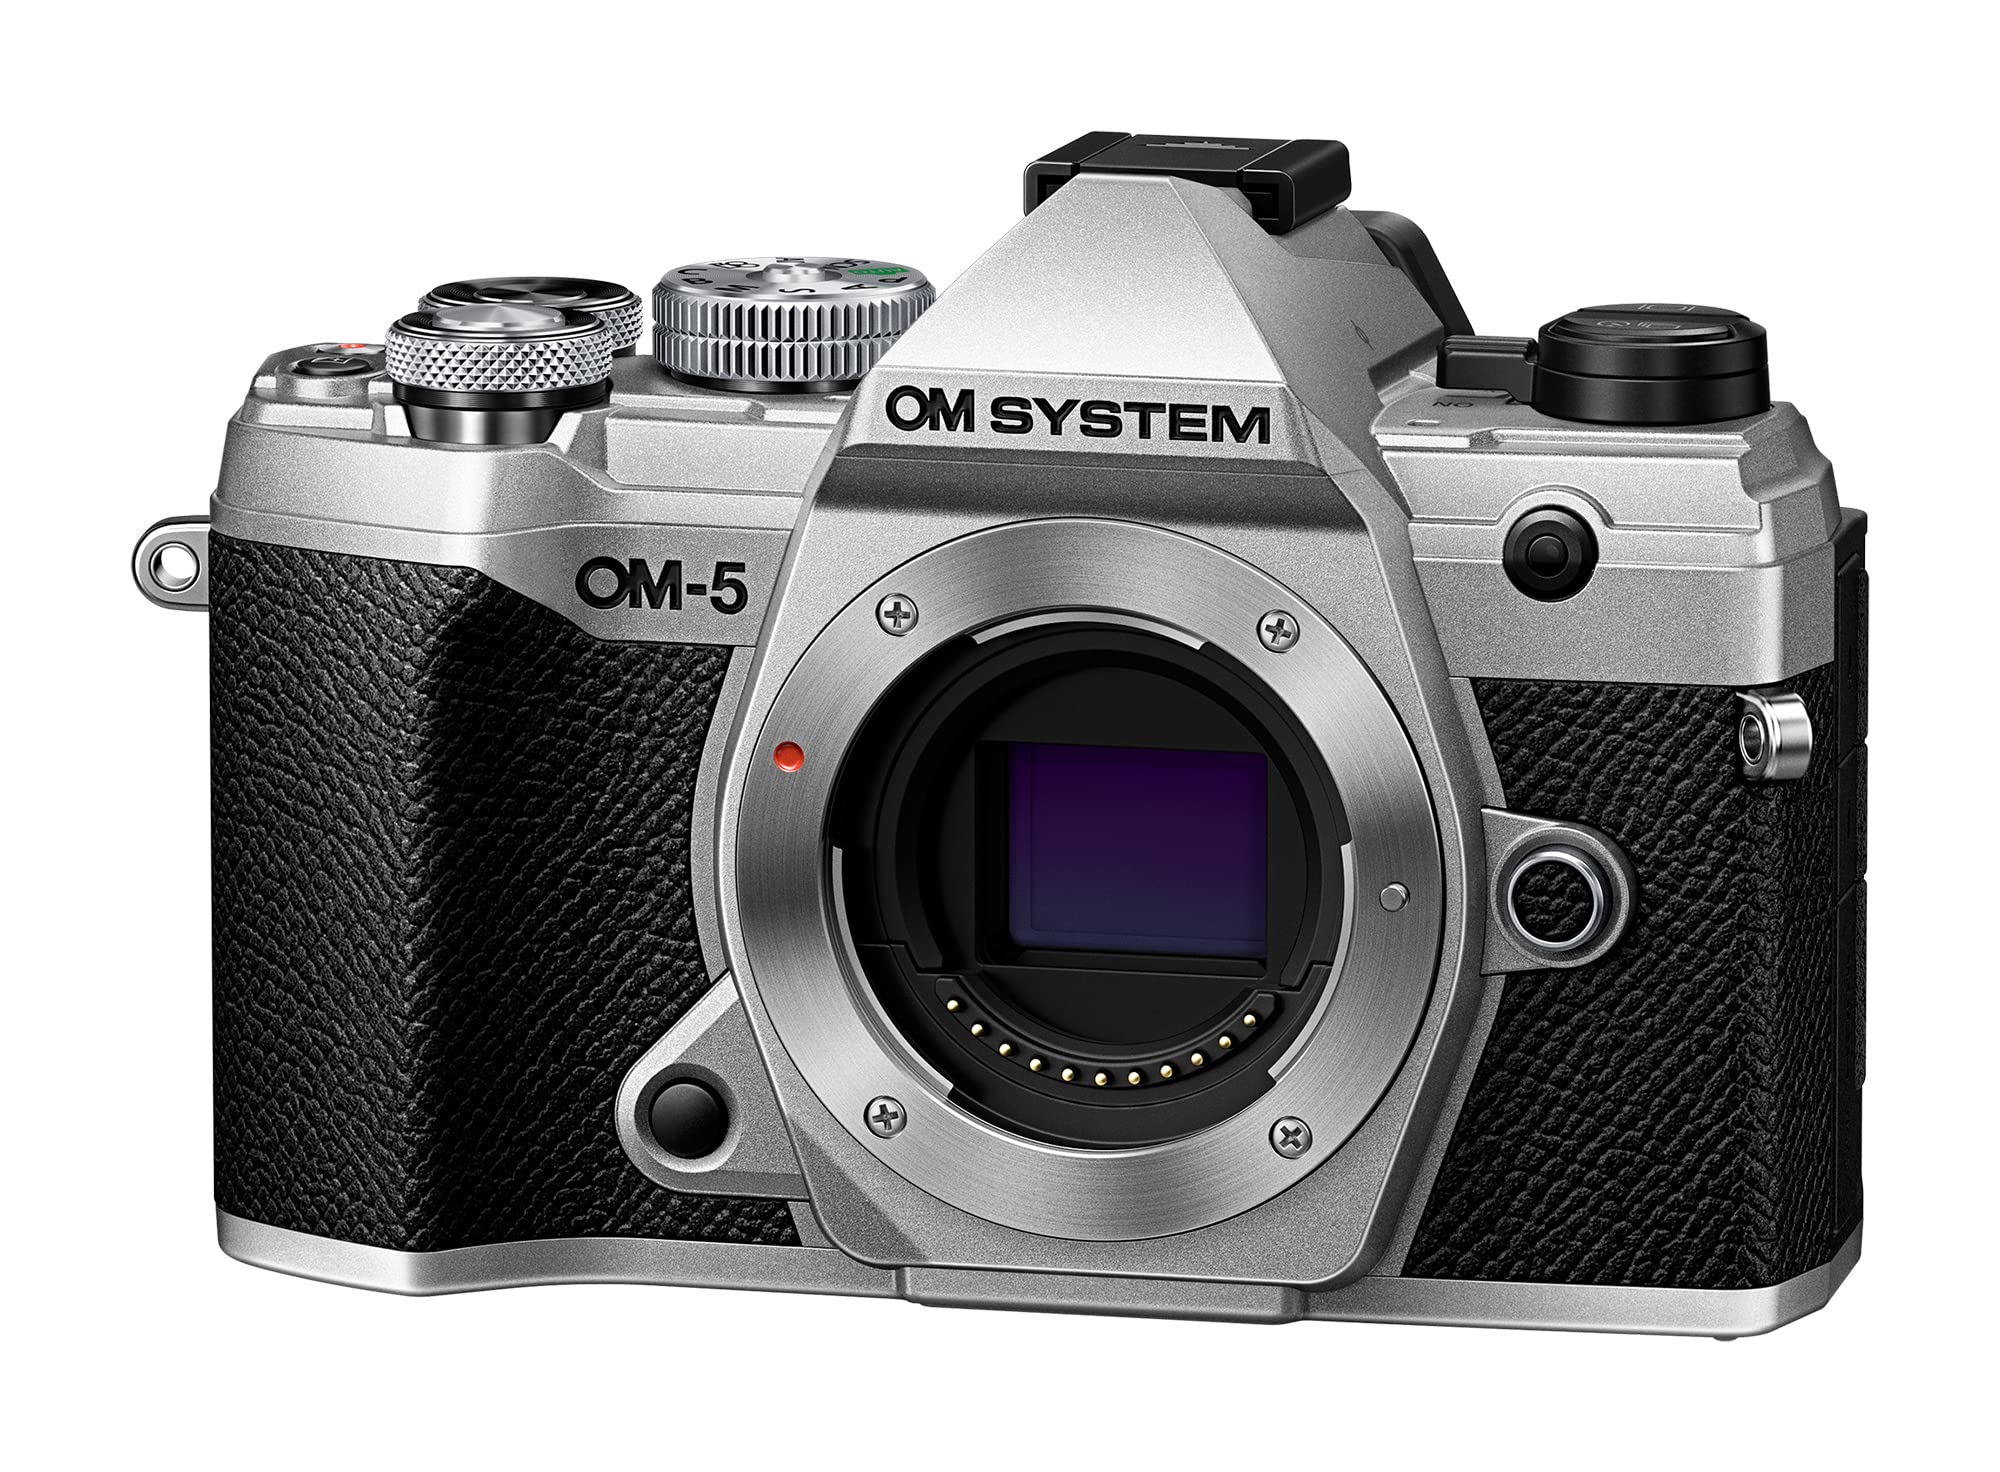 オリンパス Olympus OM System OM-5 Silver Micro Four Thirds System Camera Outdoor Camera Weather Sealed Design 5-Axis Ima